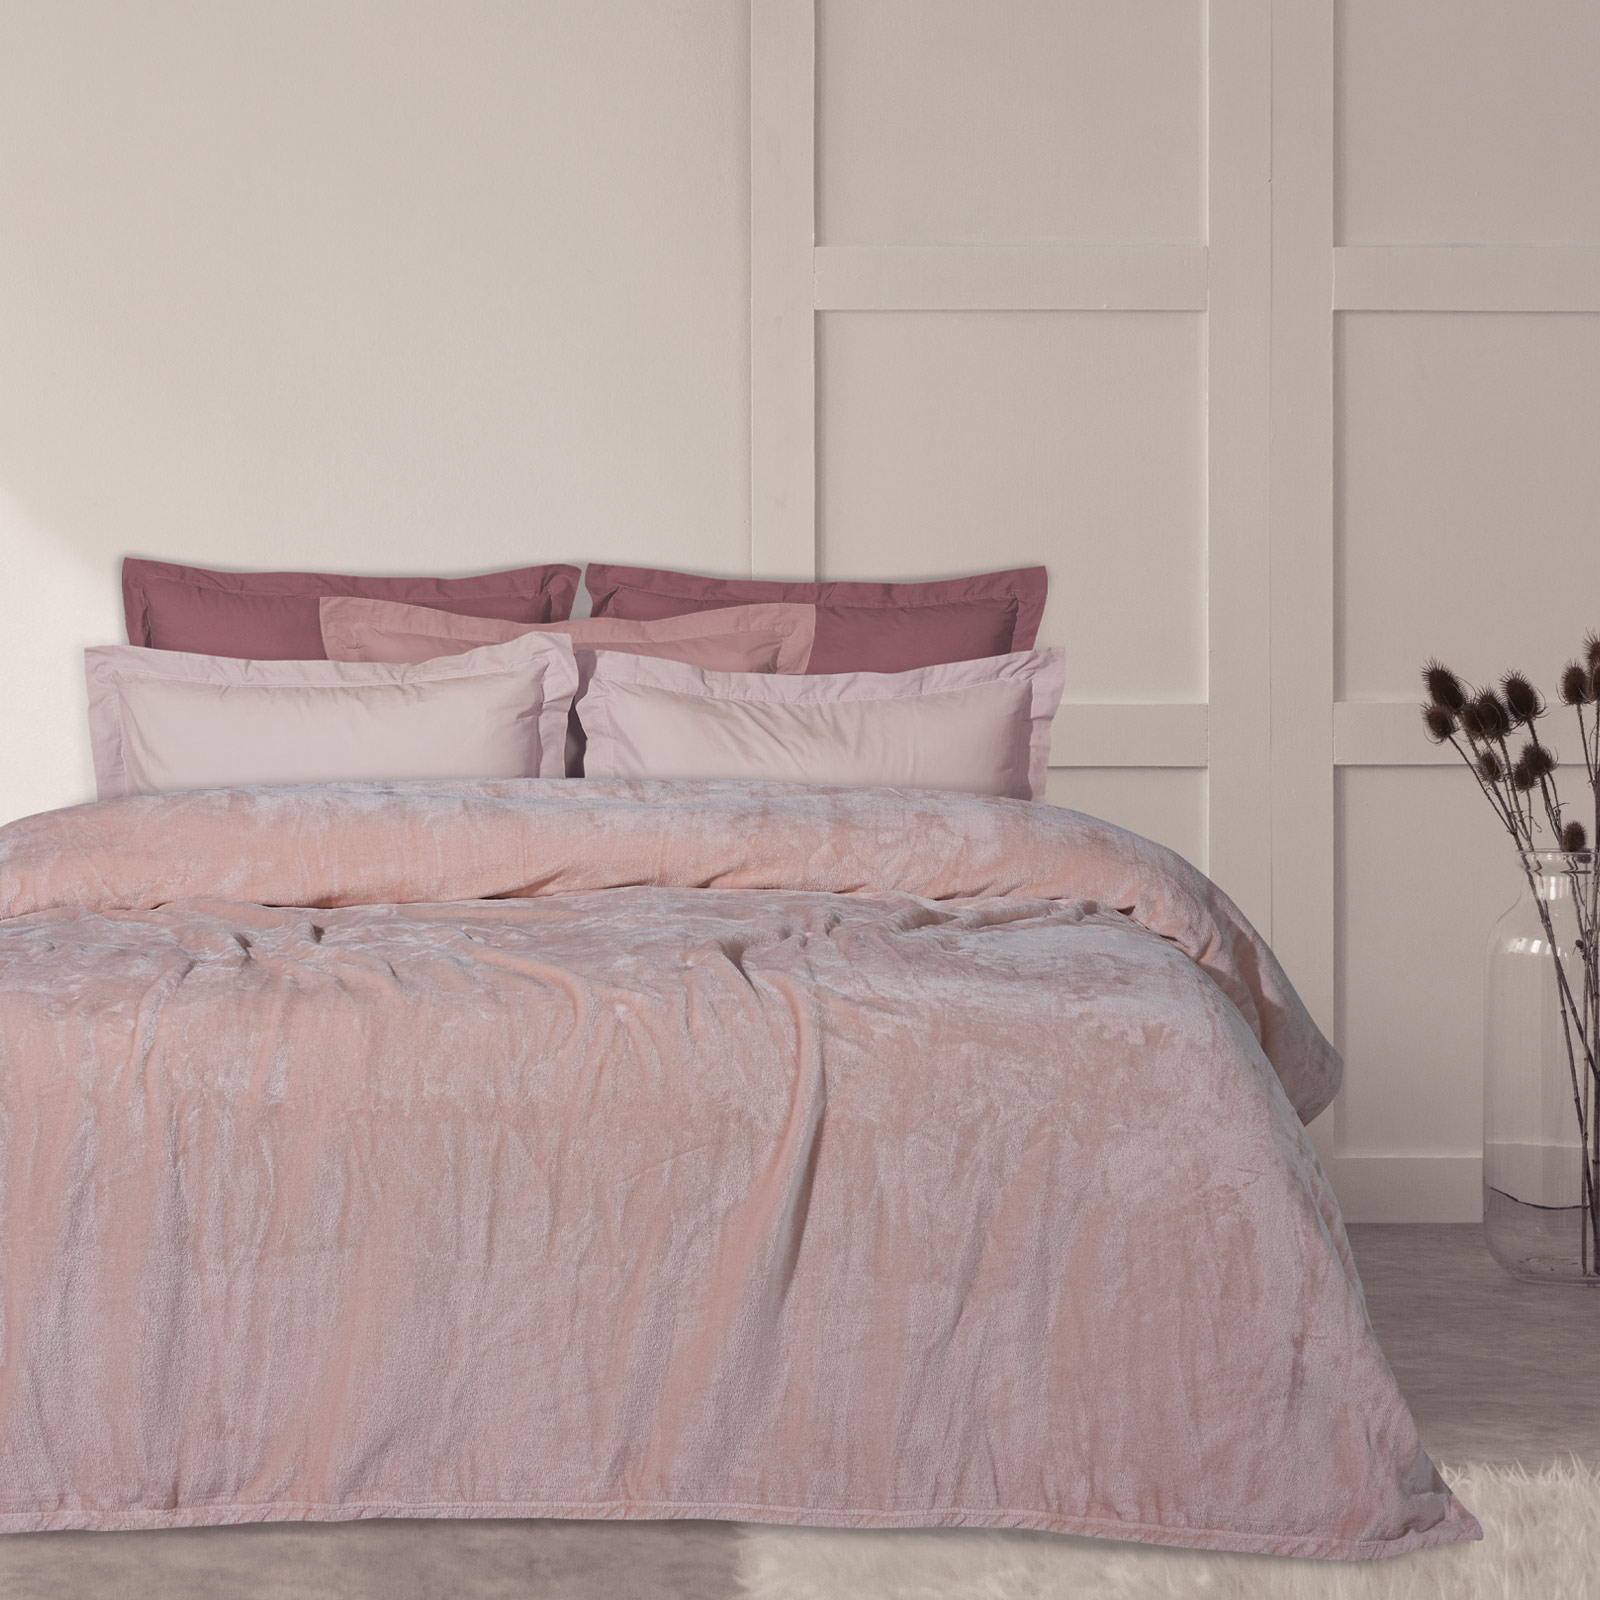 Κουβέρτα Βελουτέ Μονόχρωμη Υπέρδιπλη 220×240εκ. Blankets 1346 Ροζ Das Home (Ύφασμα: Polyester, Χρώμα: Ροζ, Μέγεθος: Υπέρδιπλα) – Das Home – 420577721346